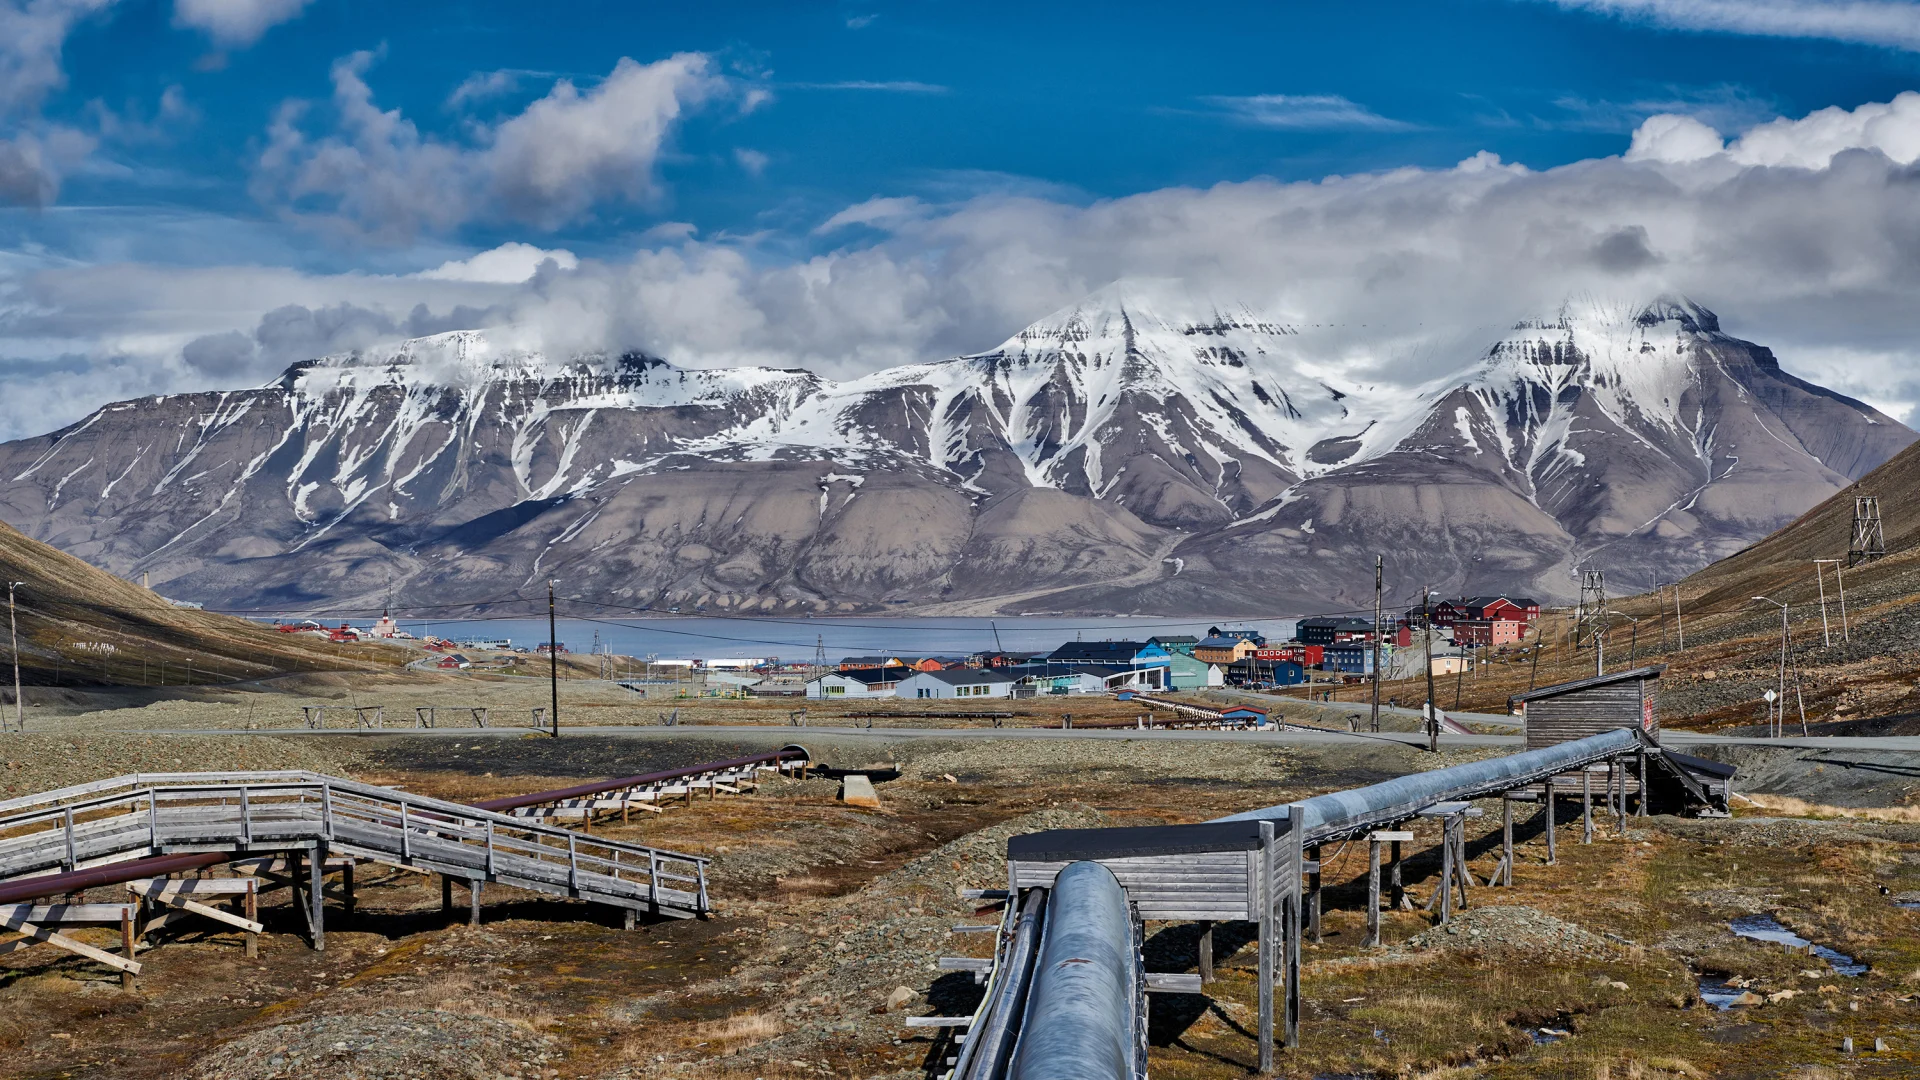 Sejlads rundt om Svalbard – den ultimative ekspedition